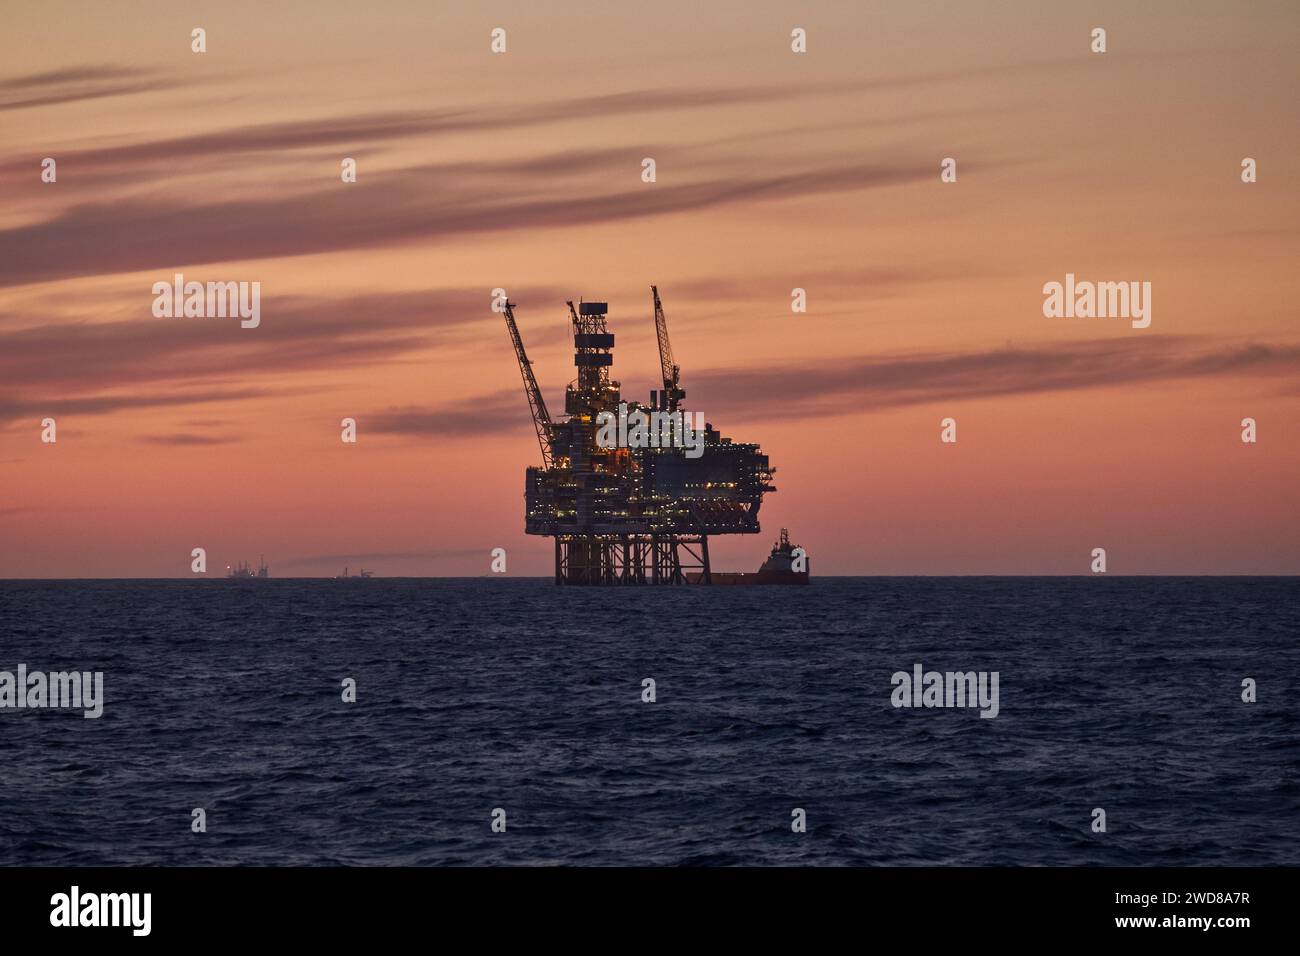 Silhouette d'une plate-forme de forage de cric avec bateau d'approvisionnement à l'horizon lors d'un beau lever de soleil orange dans l'océan. Banque D'Images